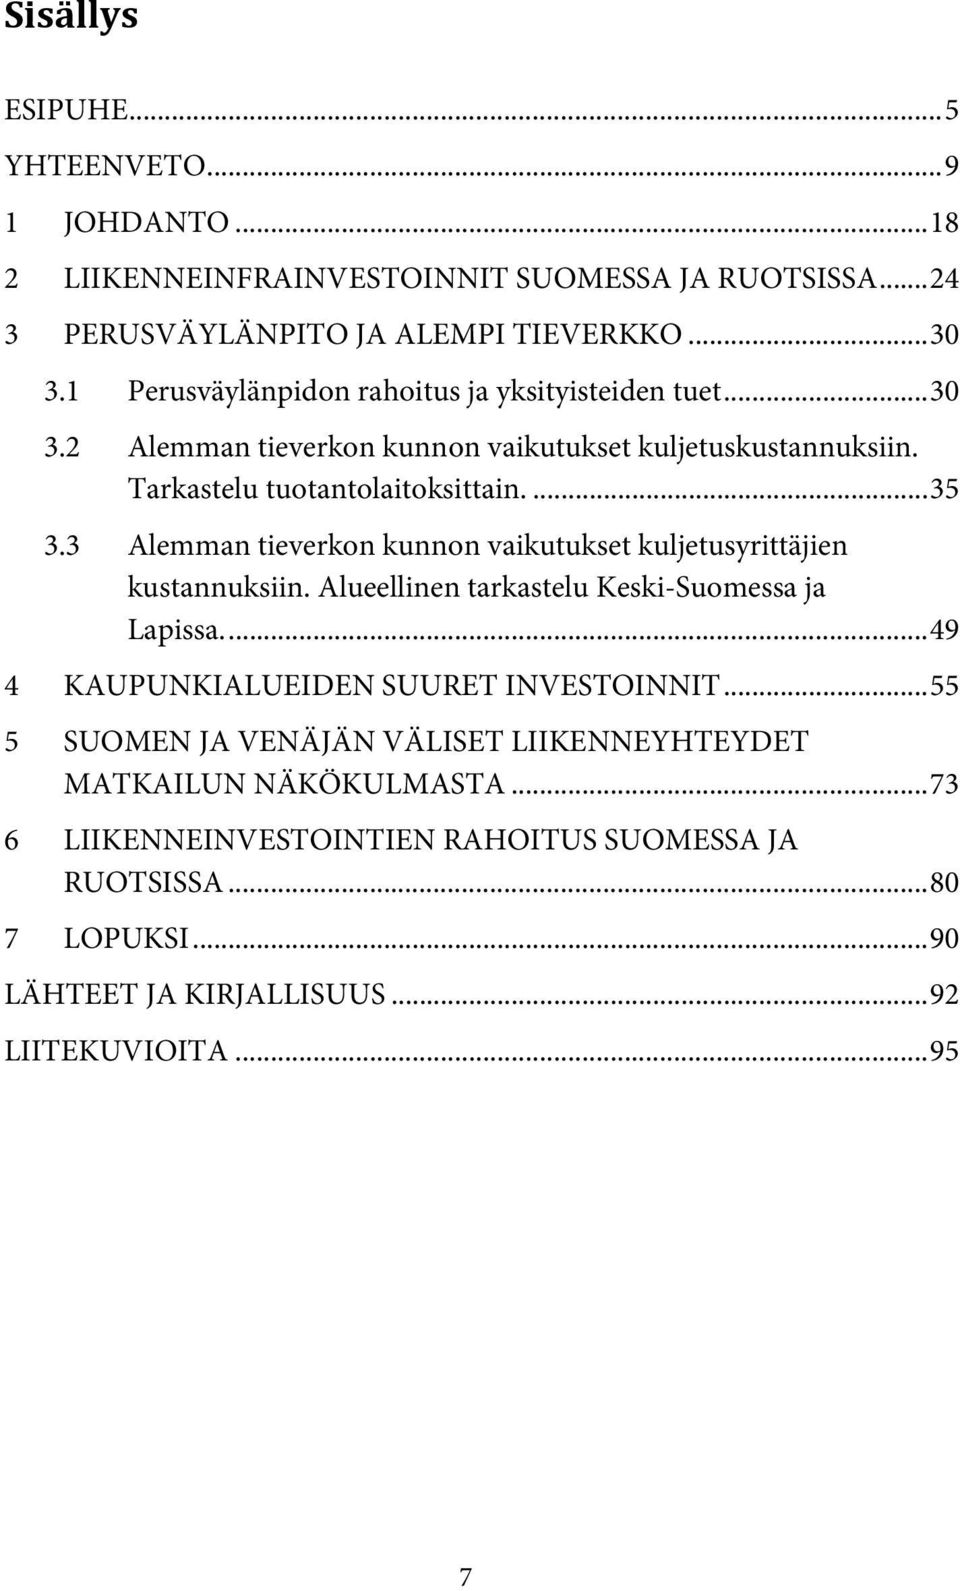 3 Alemman tieverkon kunnon vaikutukset kuljetusyrittäjien kustannuksiin. Alueellinen tarkastelu Keski-Suomessa ja Lapissa.... 49 4 KAUPUNKIALUEIDEN SUURET INVESTOINNIT.